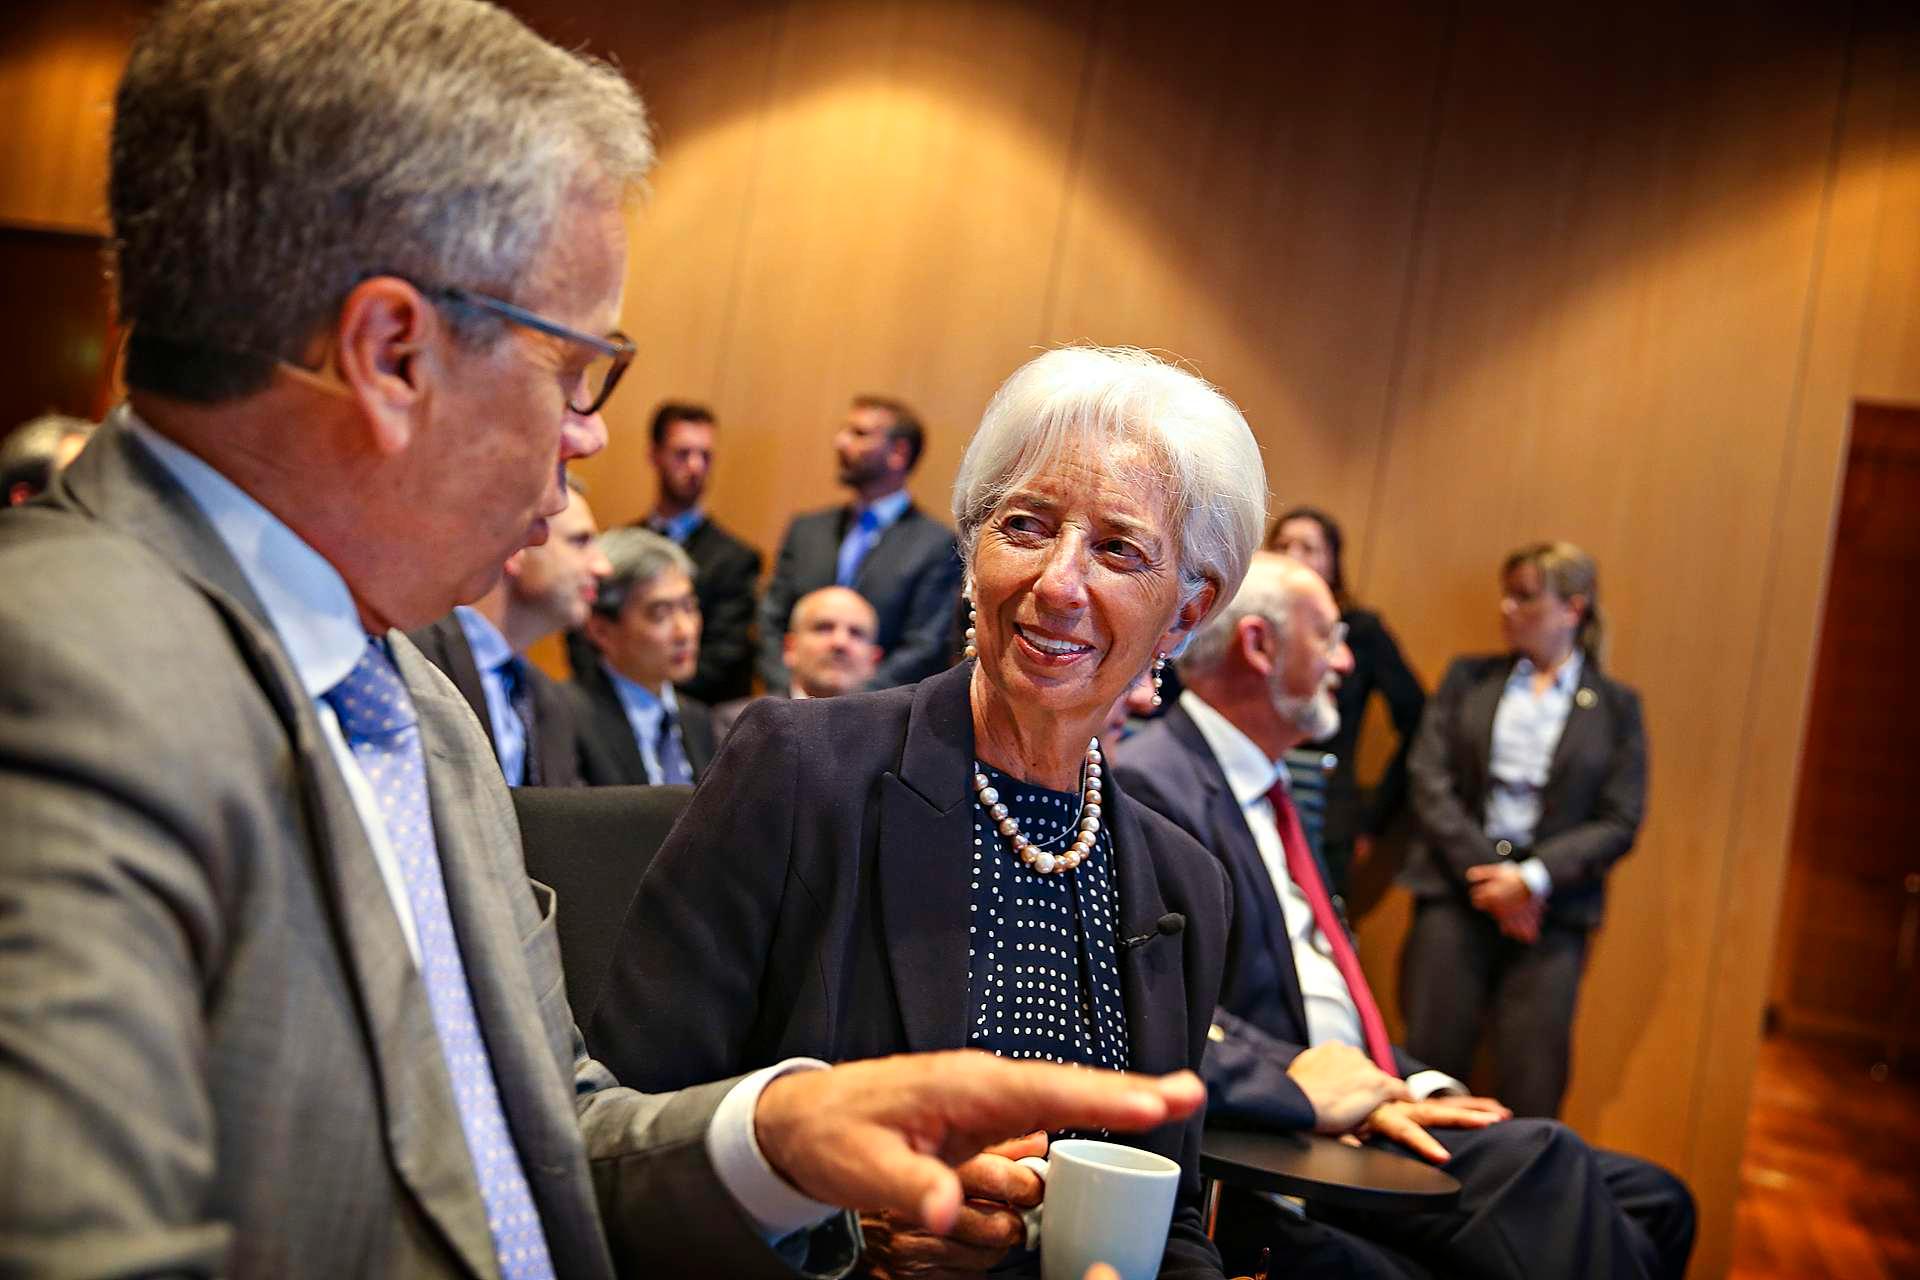 Sentralbanksjef Øystein Olsen fikk torsdag besøk av IMF-sjef Christine Lagarde.